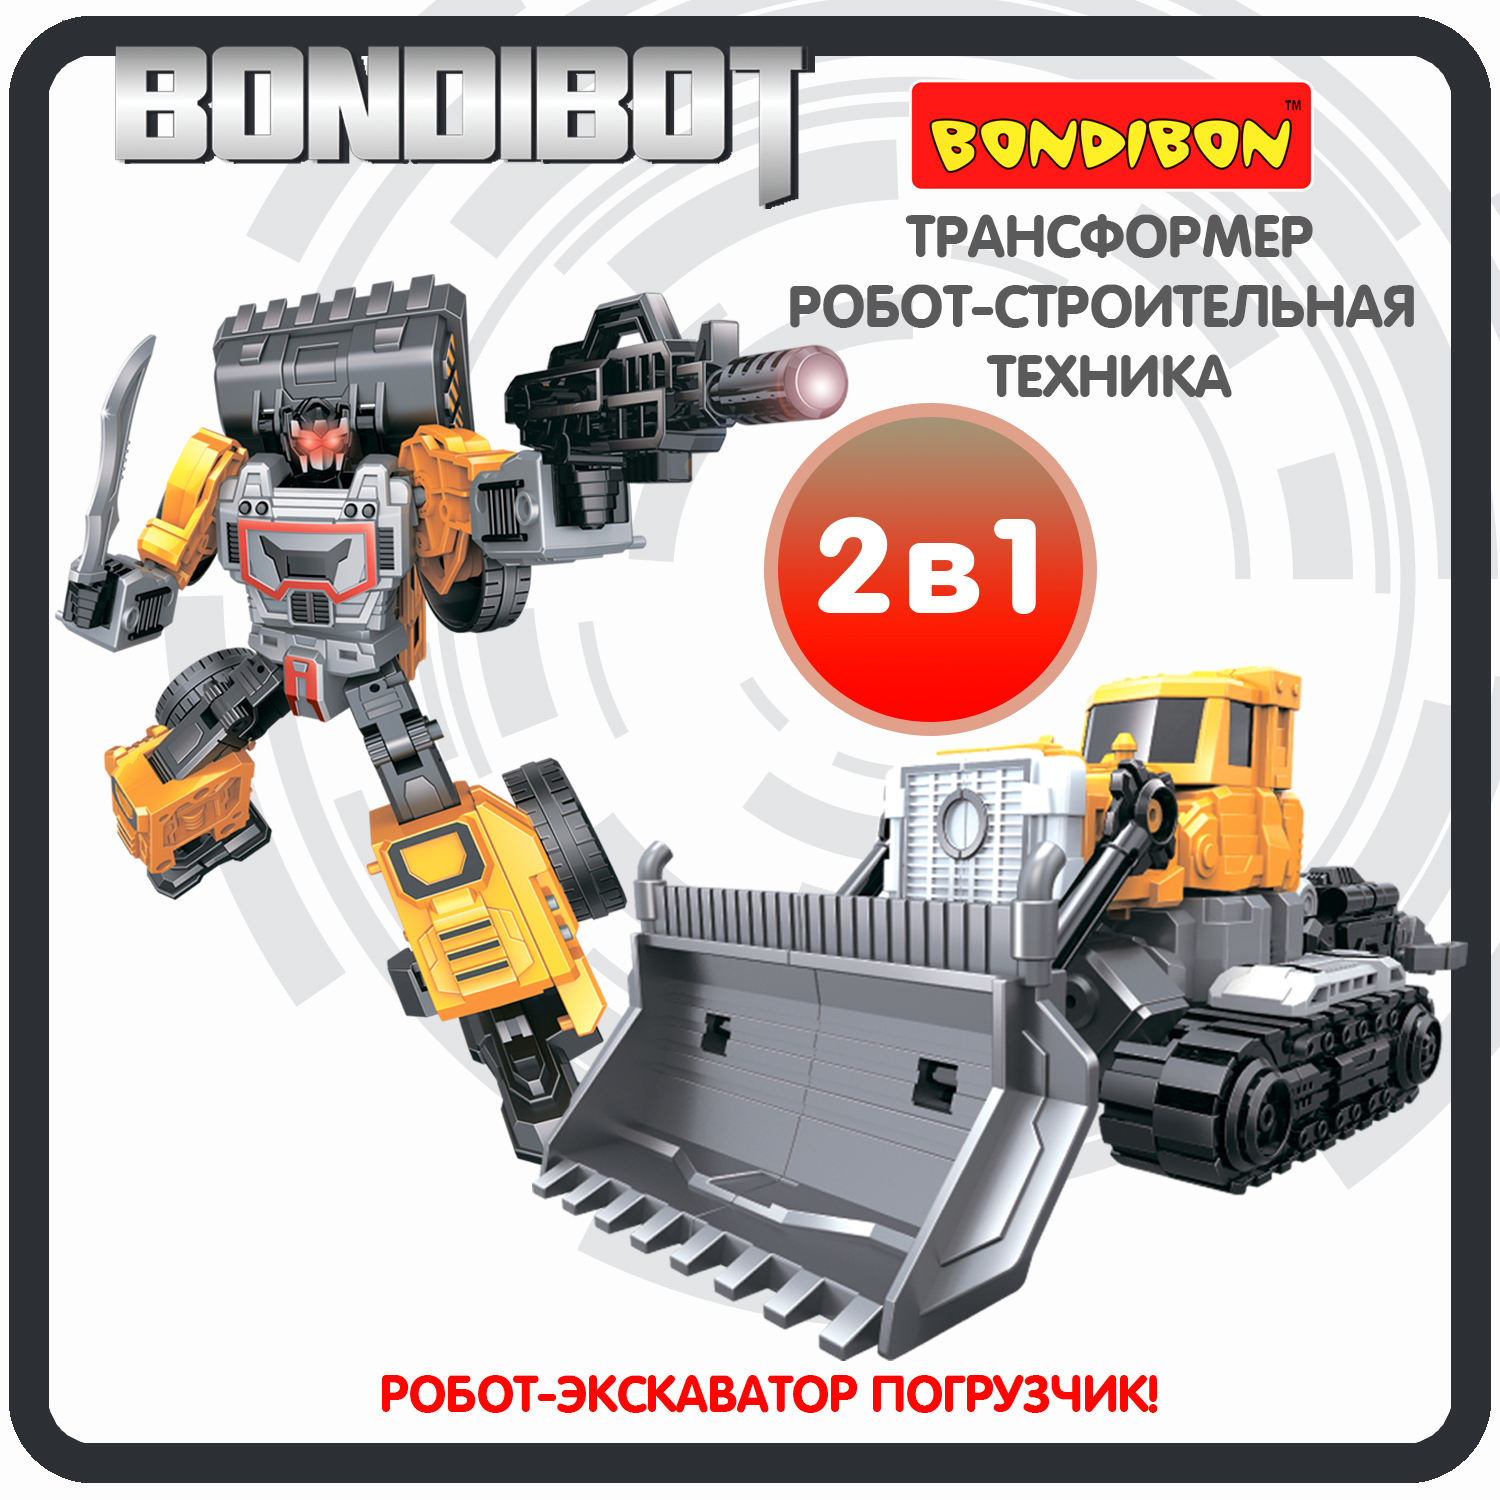 Трансформер строительная техника, 2в1 BONDIBOT Bondibon, экскаватор-погрузчик / ВВ6045